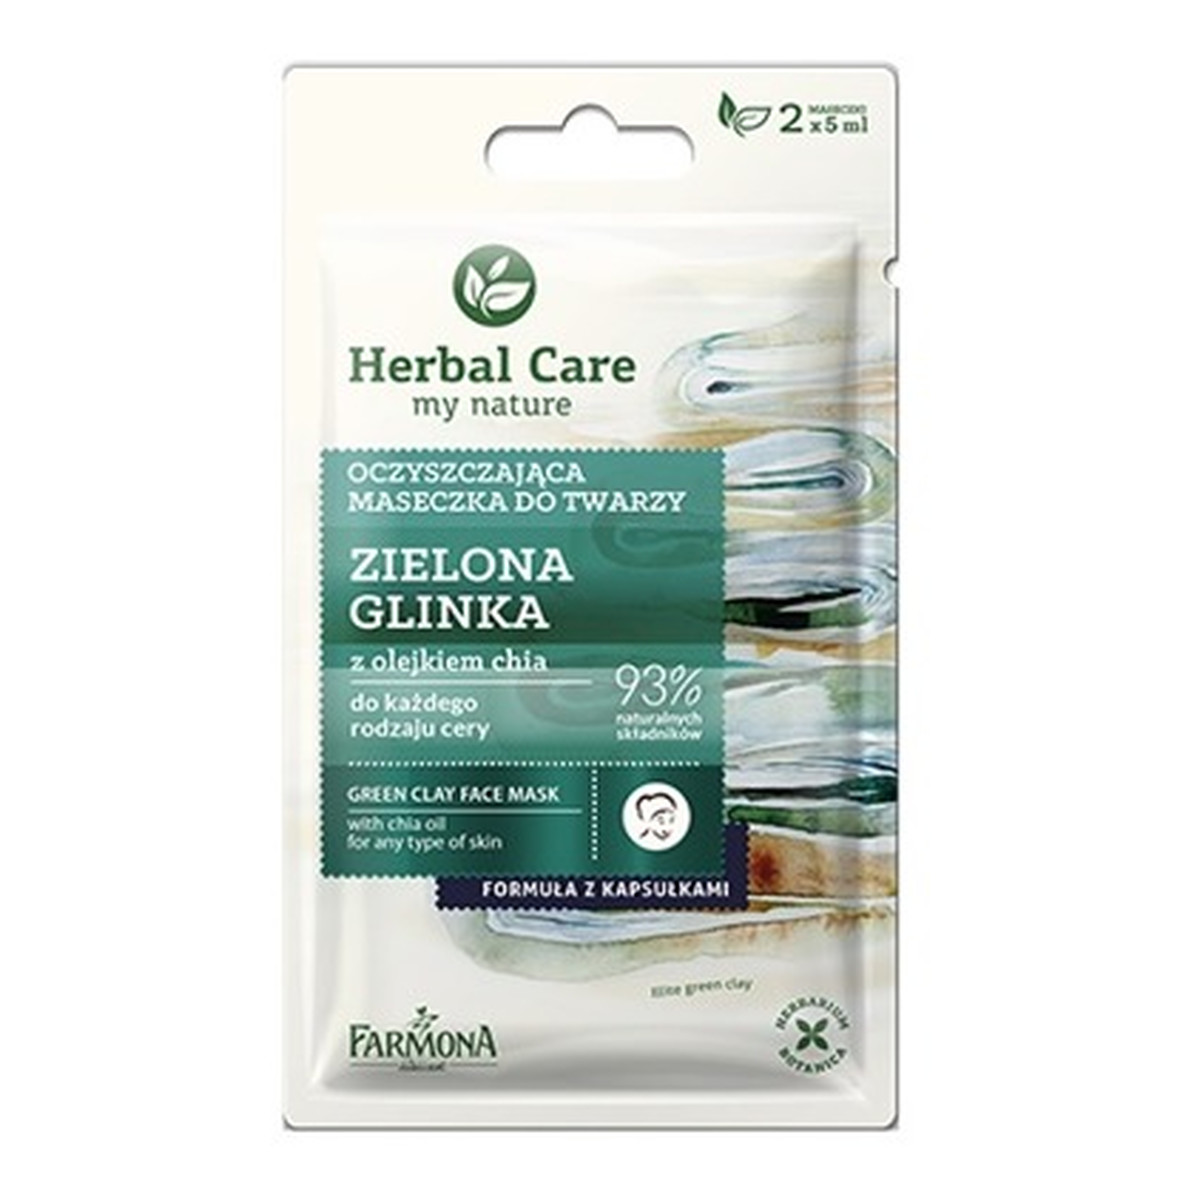 Farmona Herbal Care Oczyszczająca maseczka z zieloną glinką i olejkiem chia